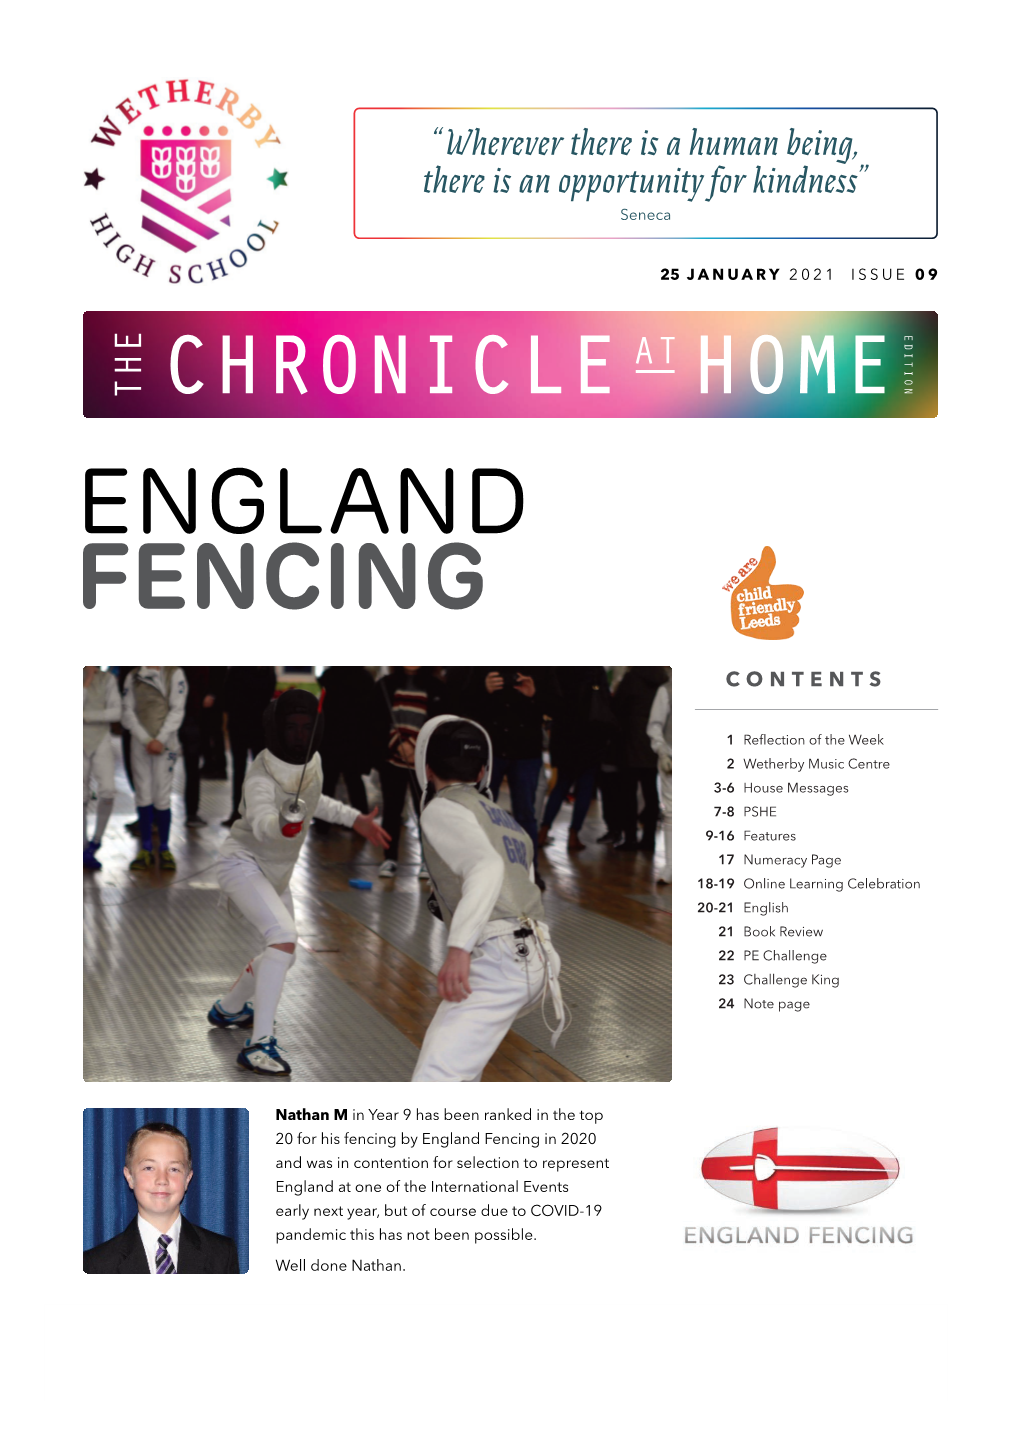 England Fencing